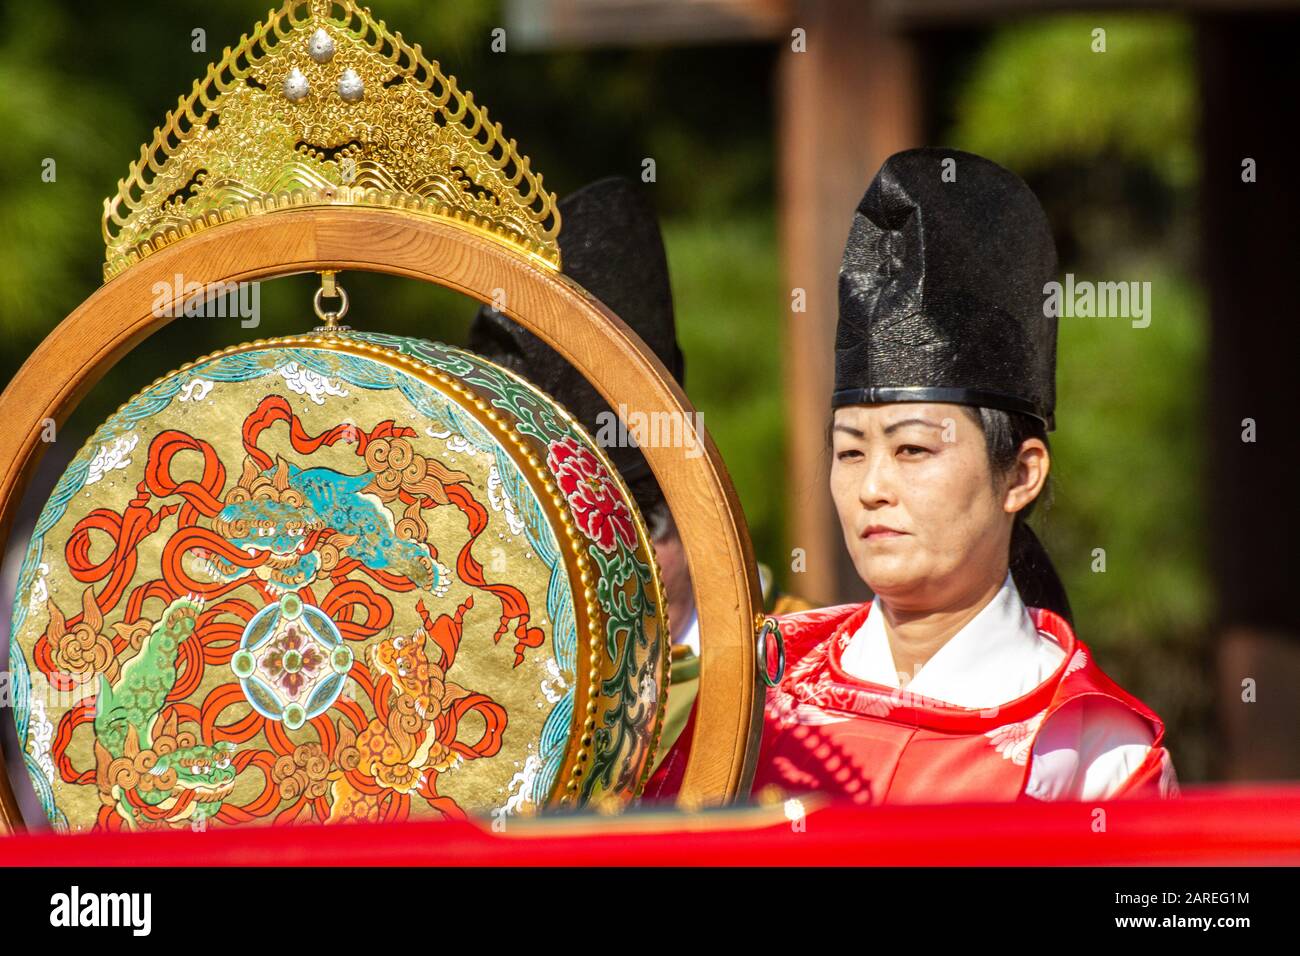 Japon, Kyoto, Palais impérial, cérémonie tenue avec des vêtements japonais traditionnels Jidai Matsuri (Festival des âges) Banque D'Images